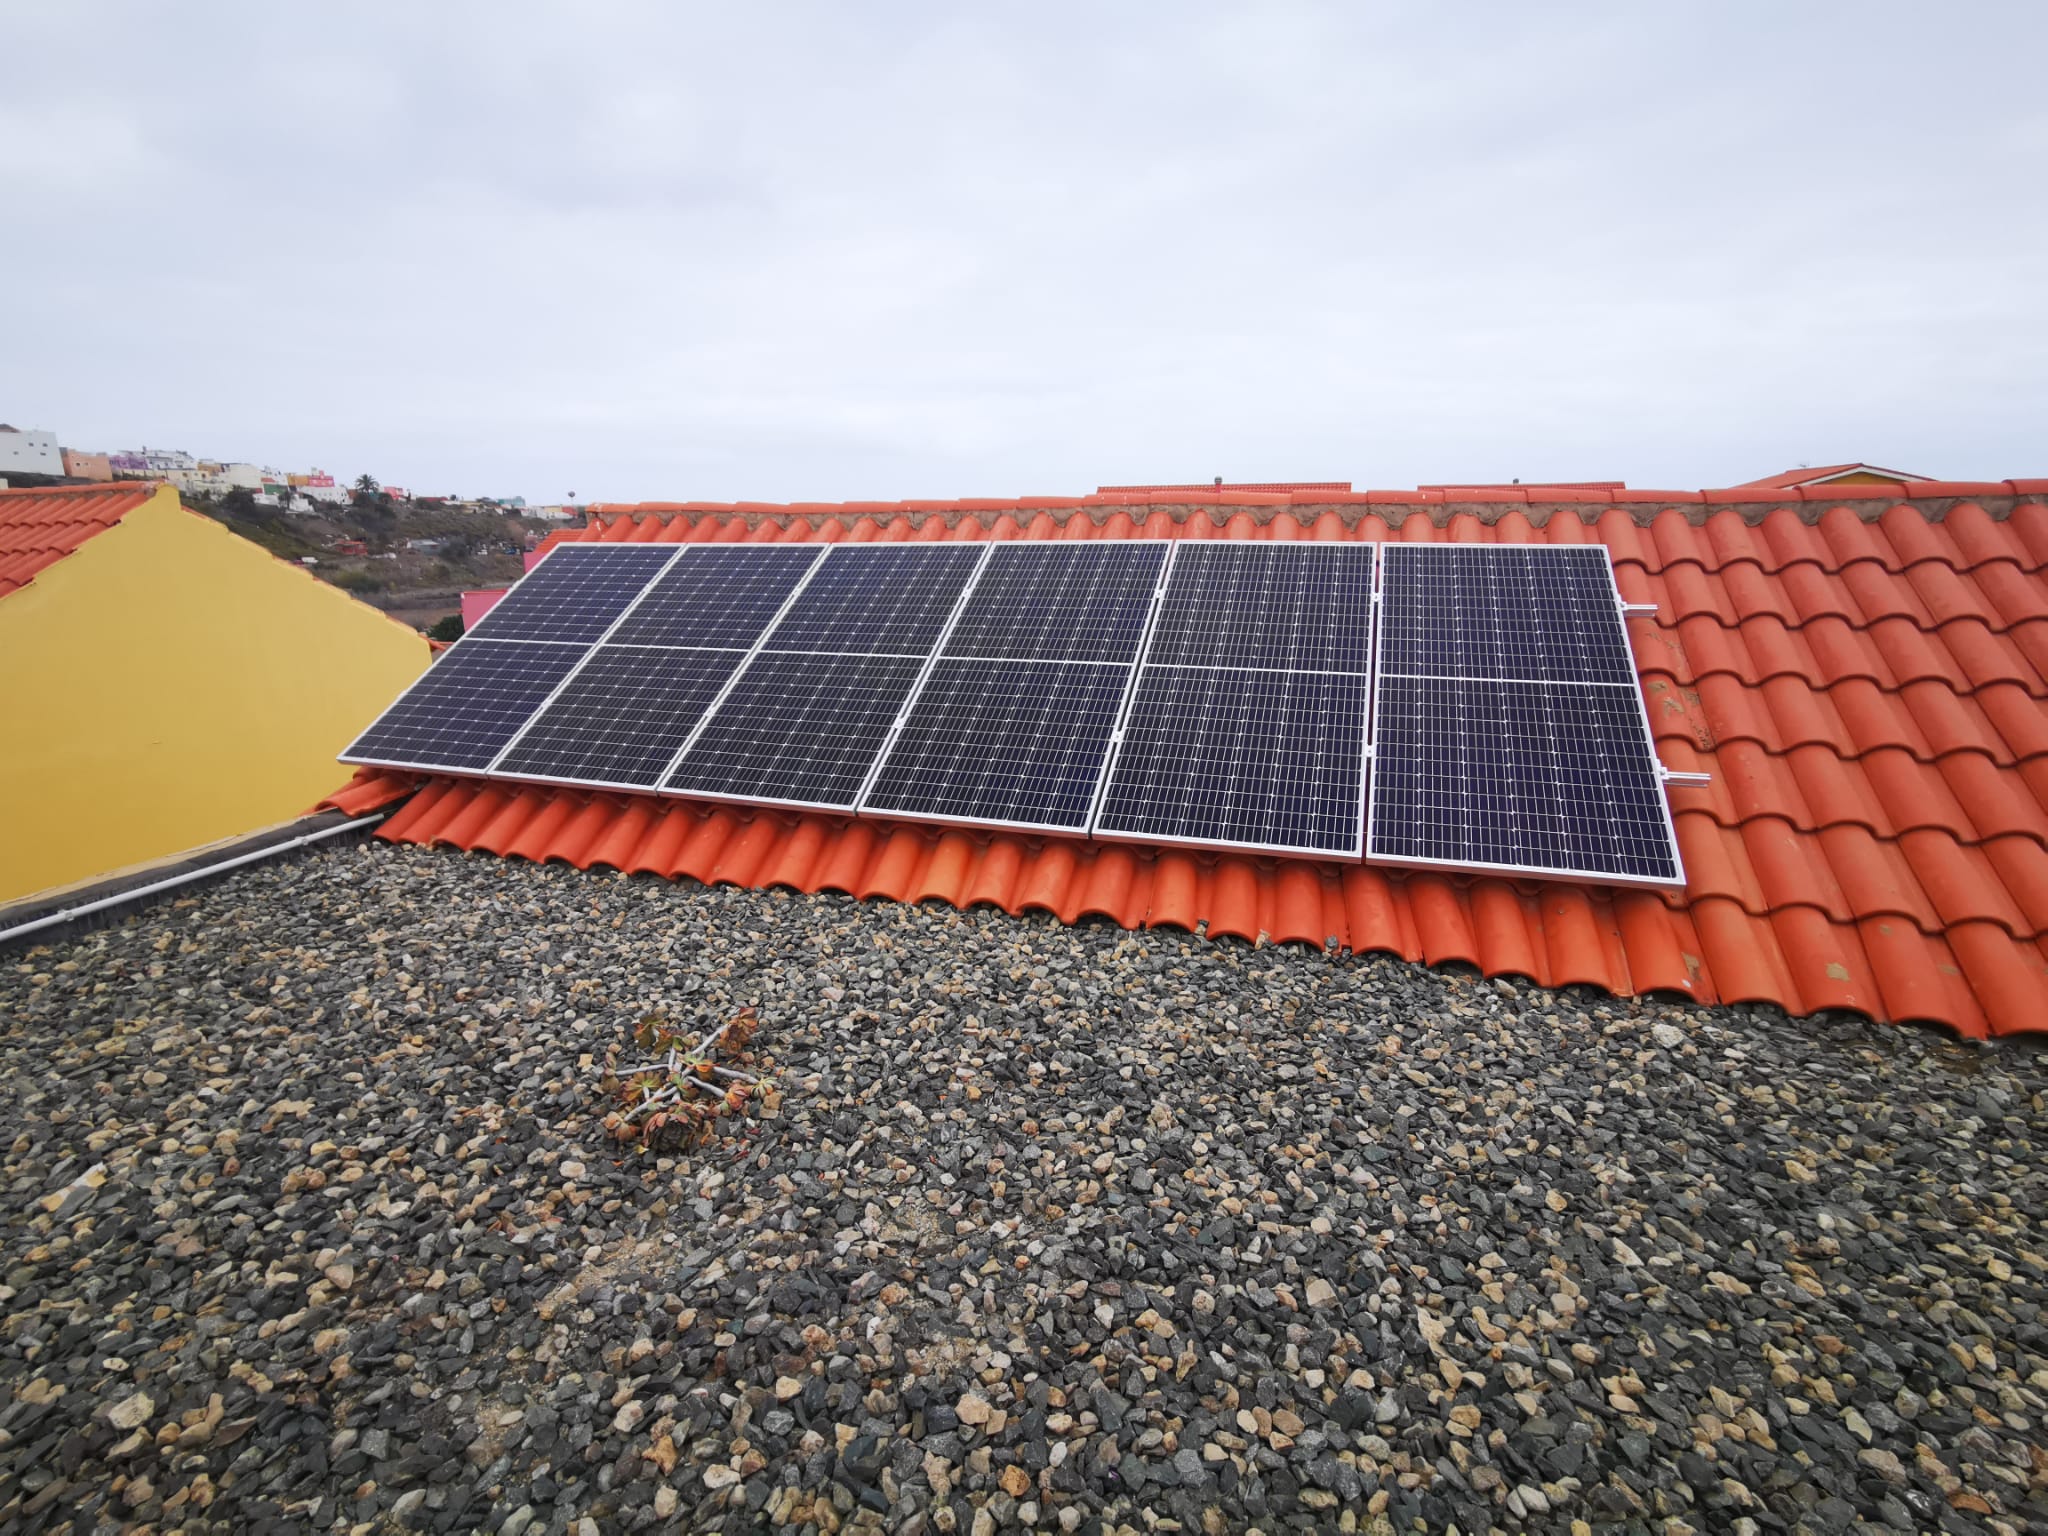 Instalación de Autoconsumo Fotovoltaico para vivienda unifamiliar situada en La Pardilla (Telde).